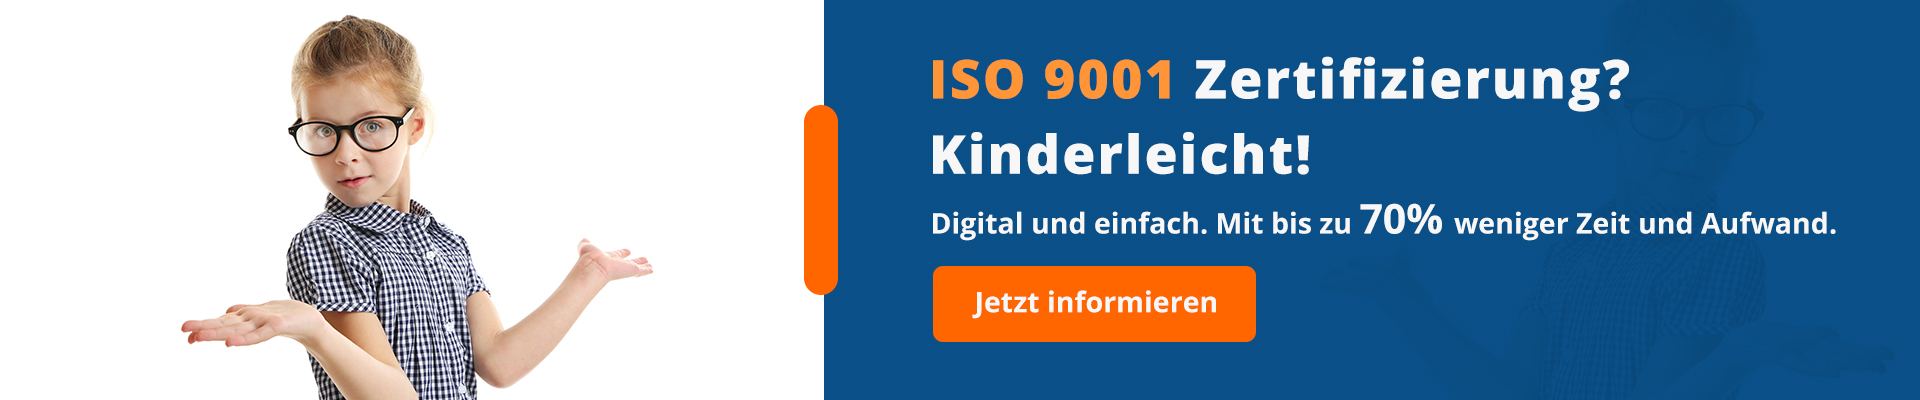 ISO 9001 Zertifizierung - das Bild erklärt, wie es einfach funktioniert.